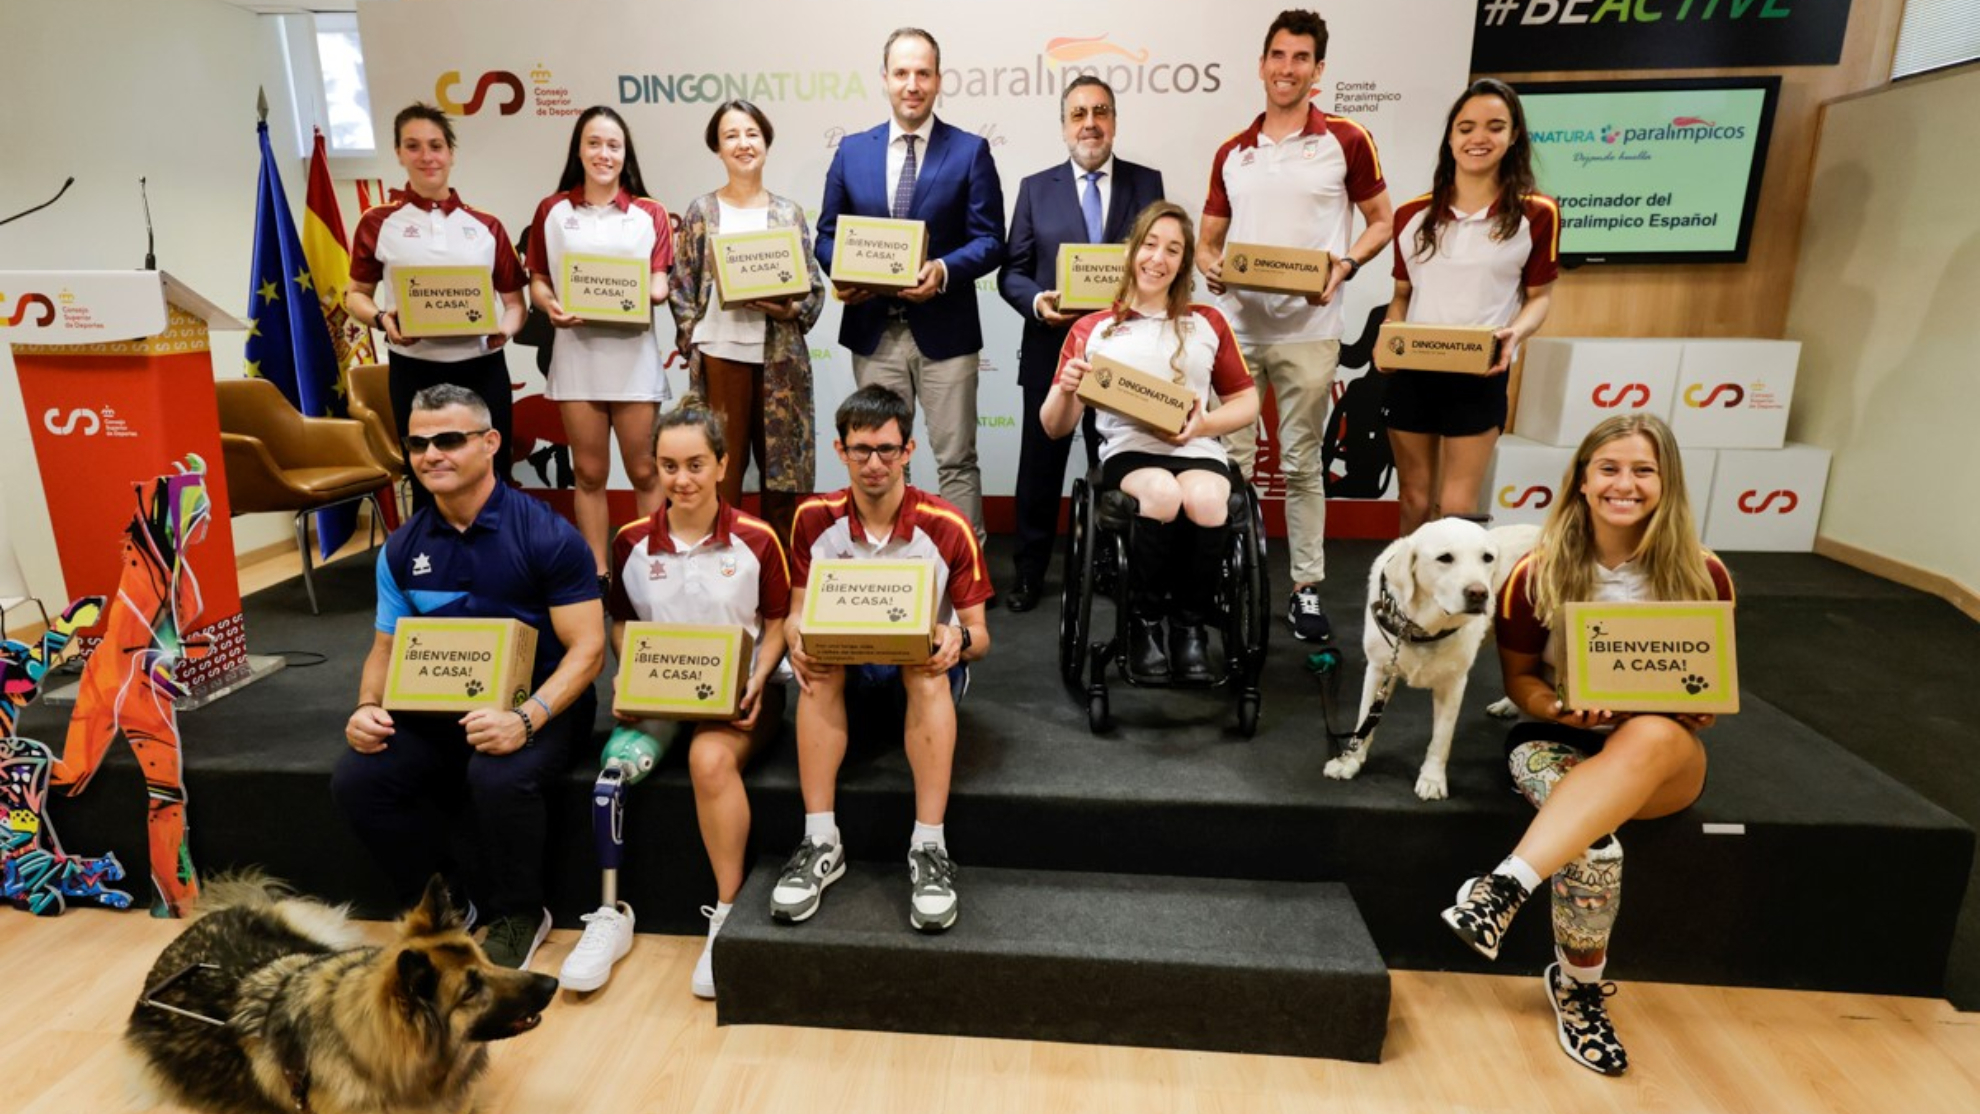 Deportistas paralímpicos en la presentación de Dingonatura como nuevo patrocinador.